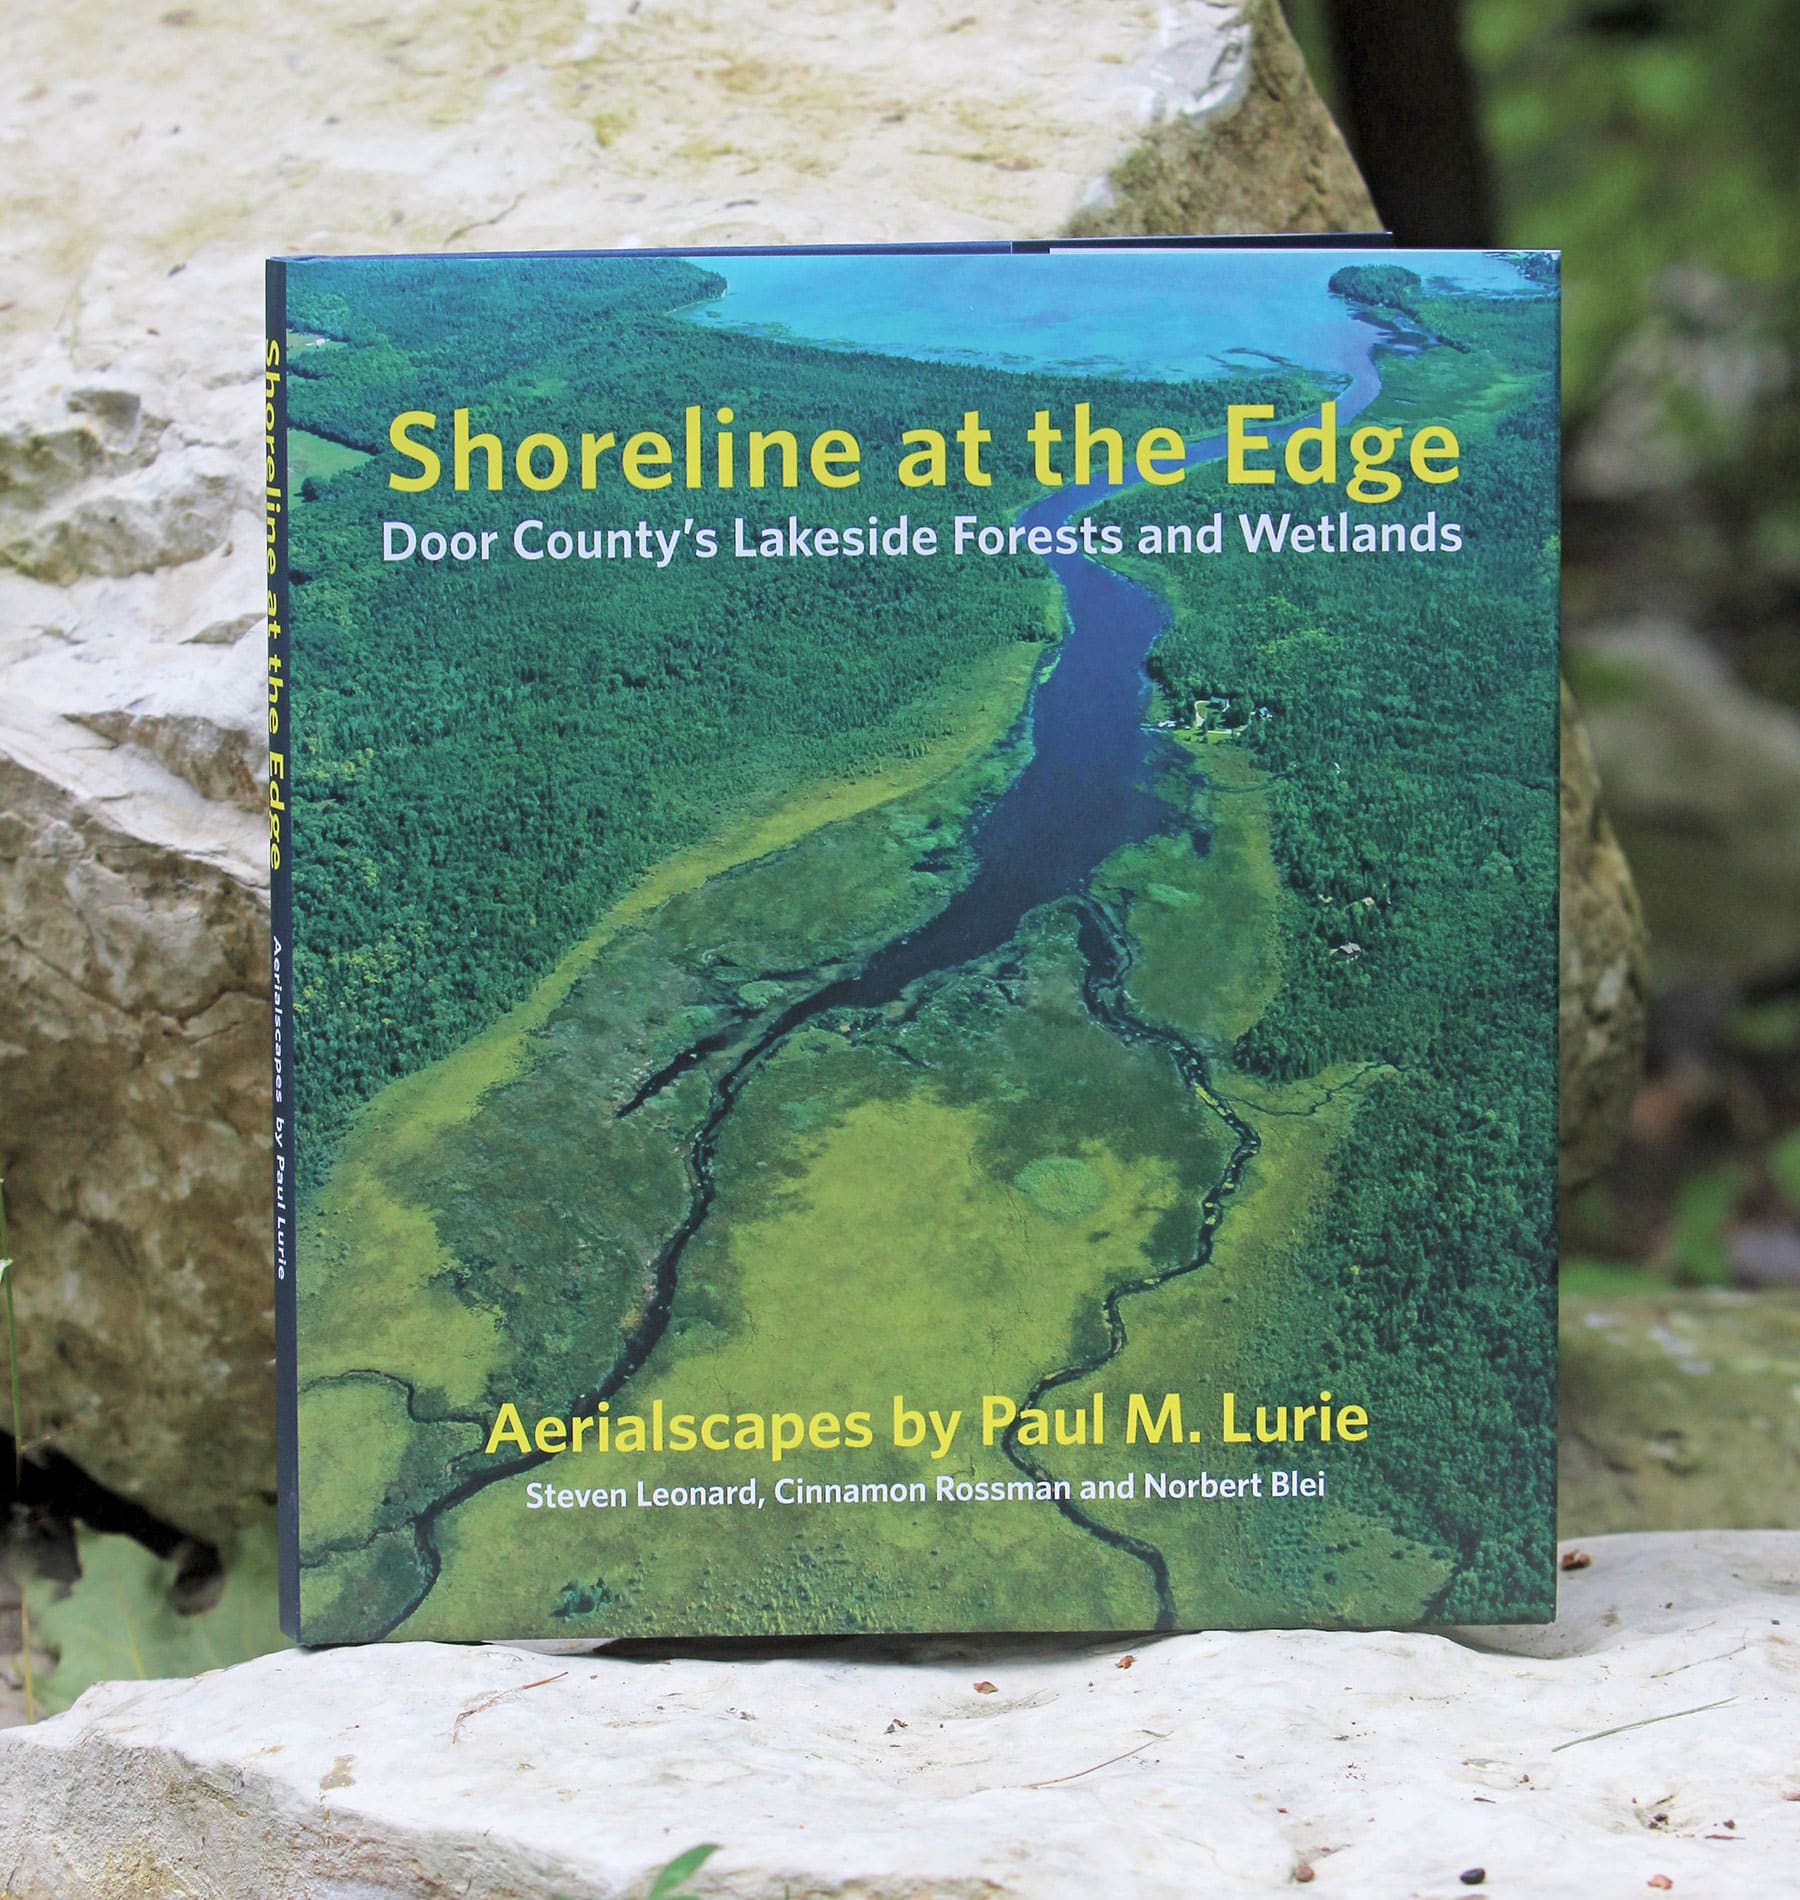 Shoreline-at-the-edge-book1800